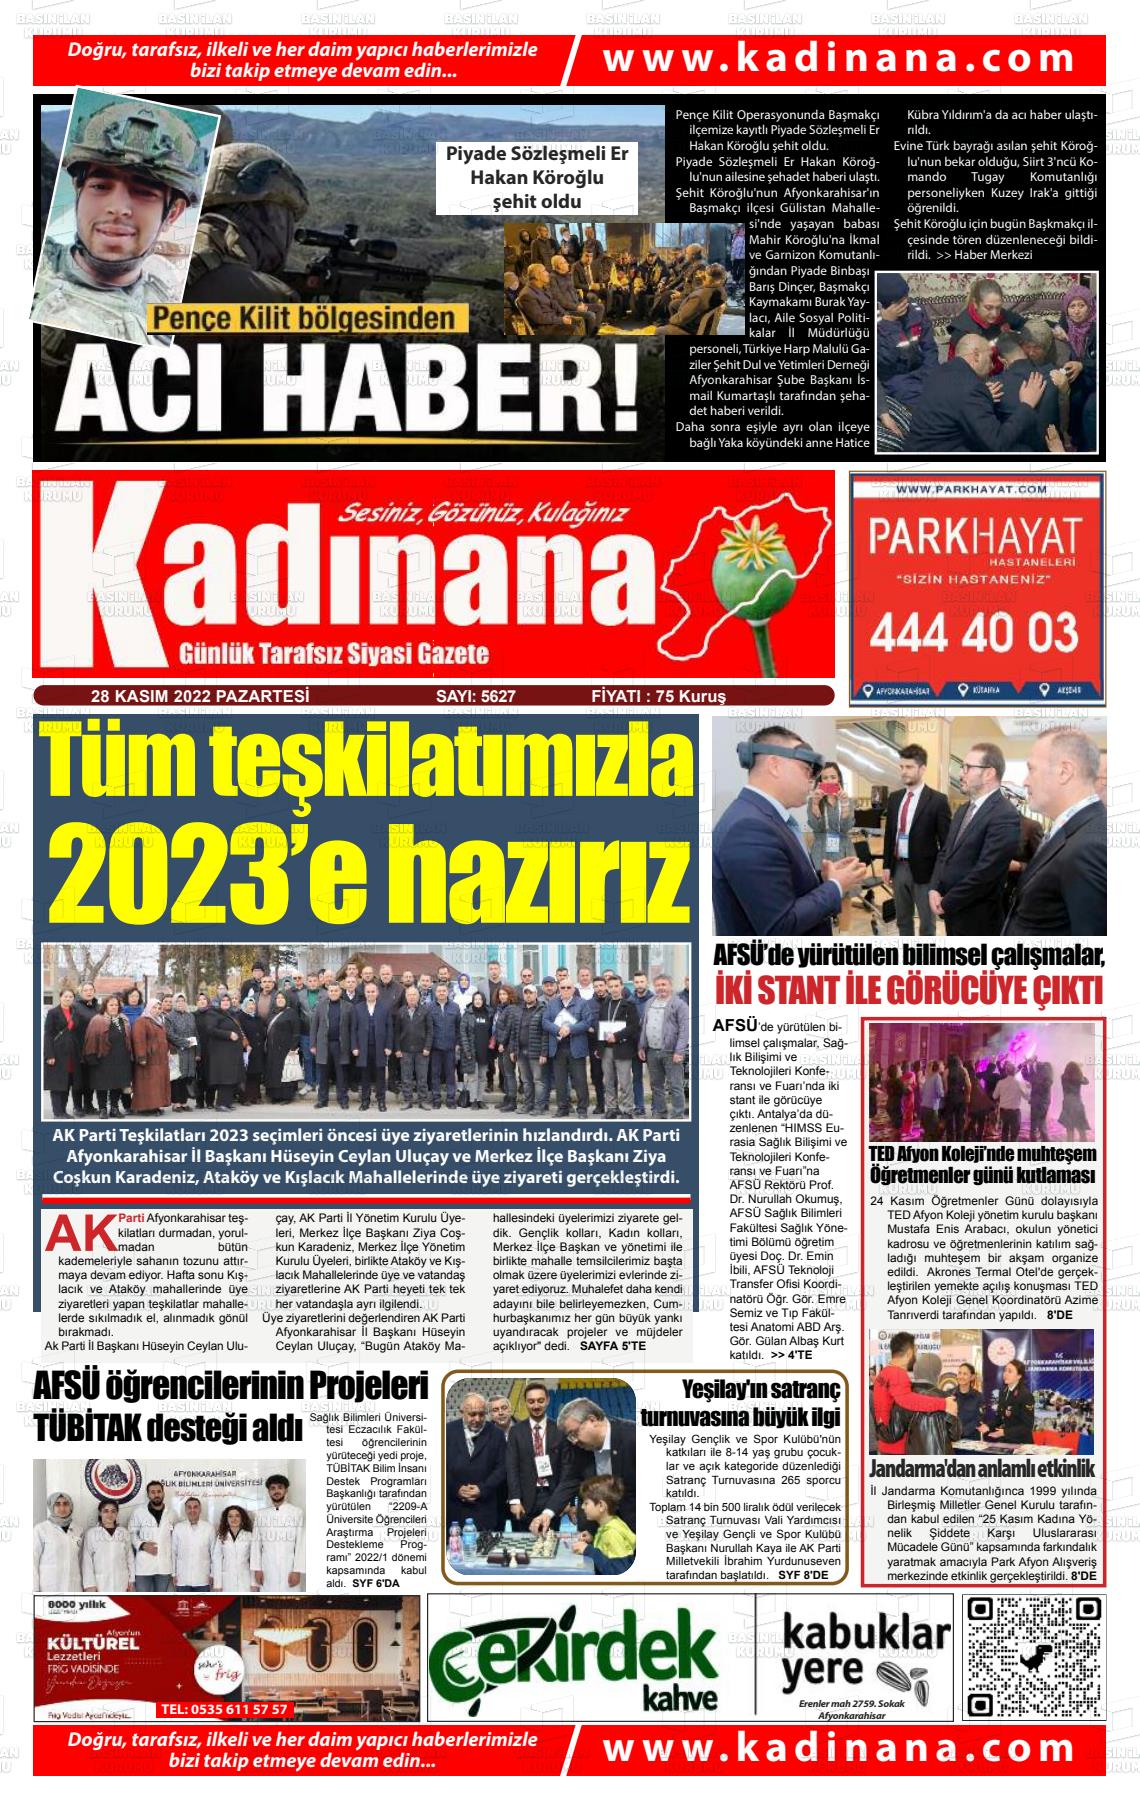 28 Kasım 2022 Kadınana Gazete Manşeti